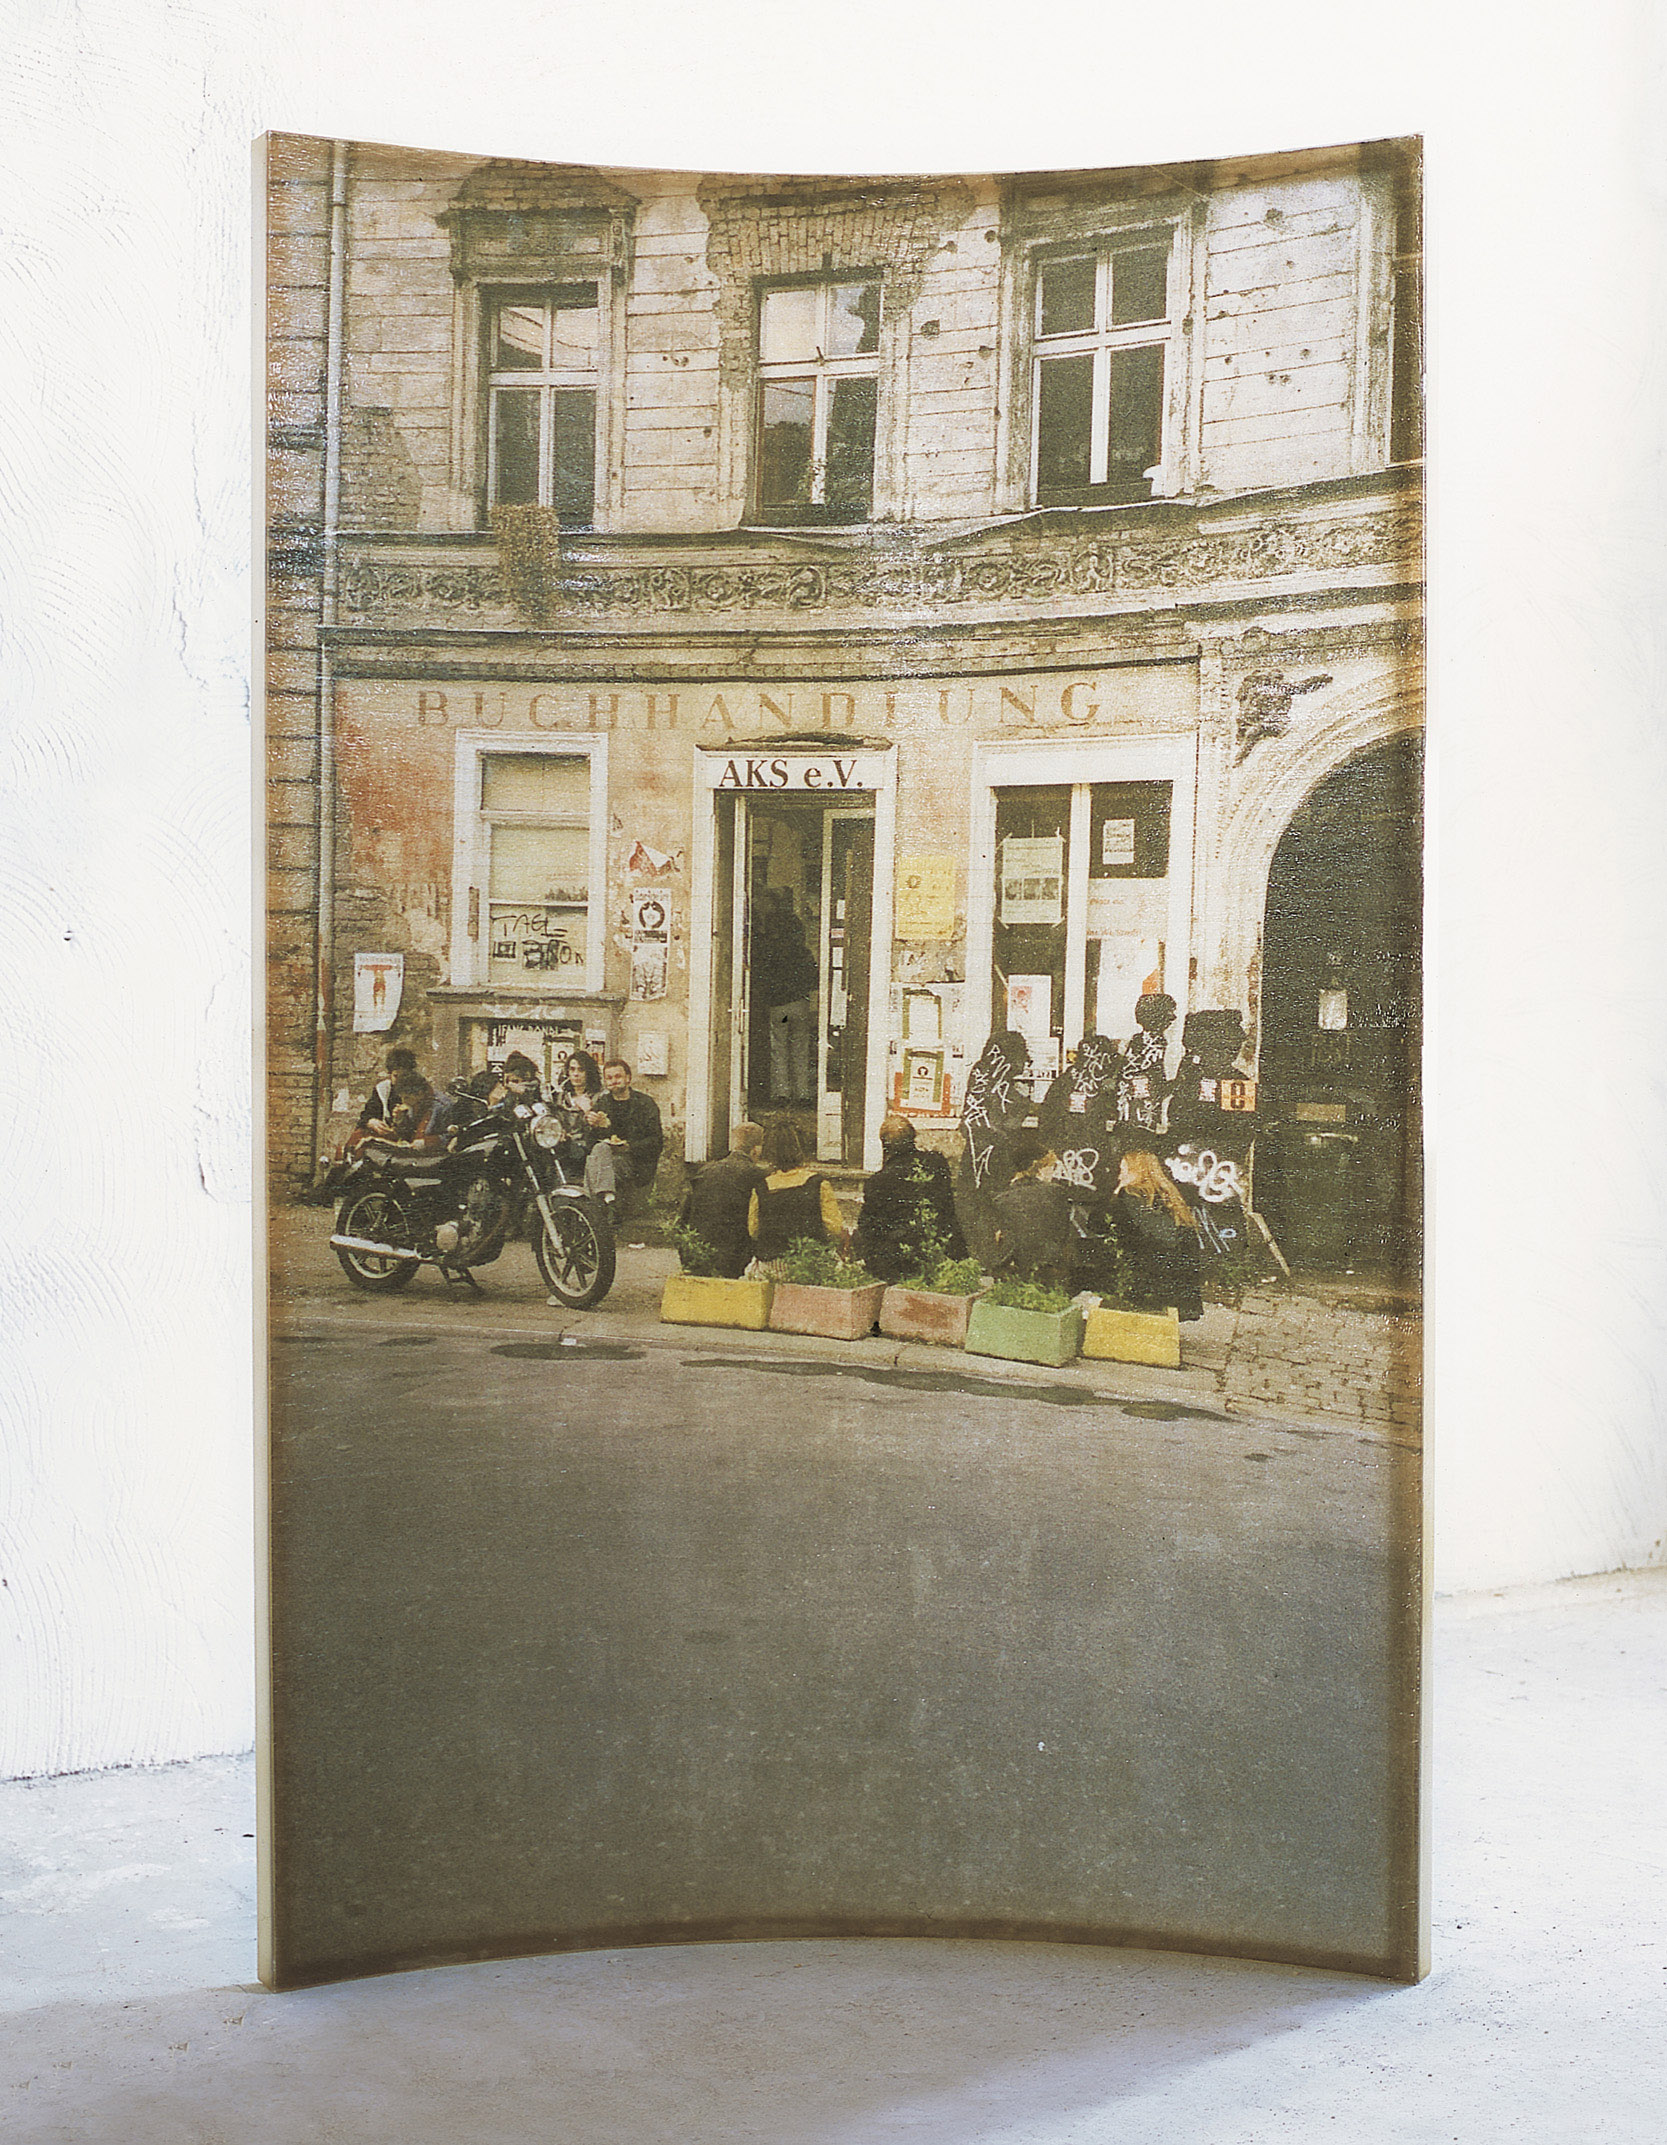 Amador. Lhome i la ciutat, 2000, resina de poliéster y fotografía, 240 x 163 x 35 cm.